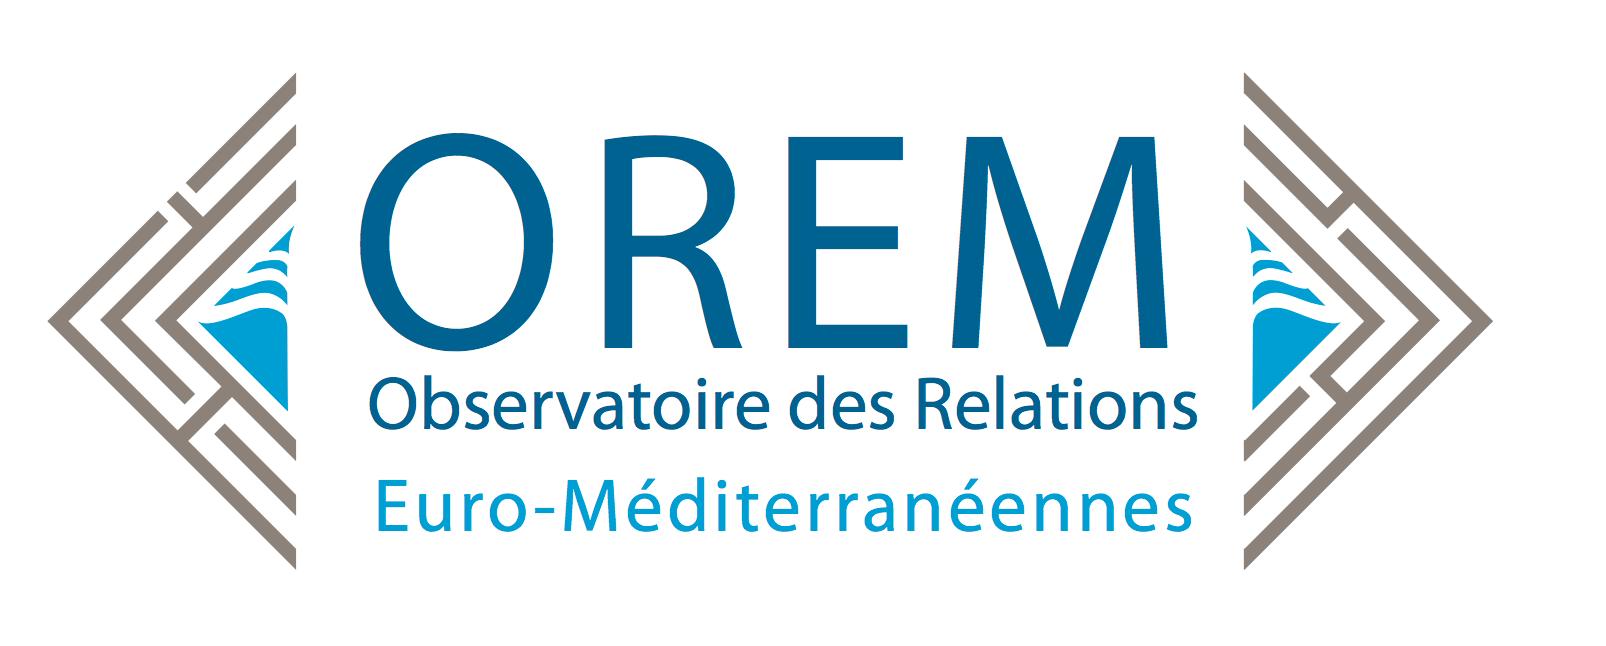 Observatoire des Relations Euro-Méditerranéennes